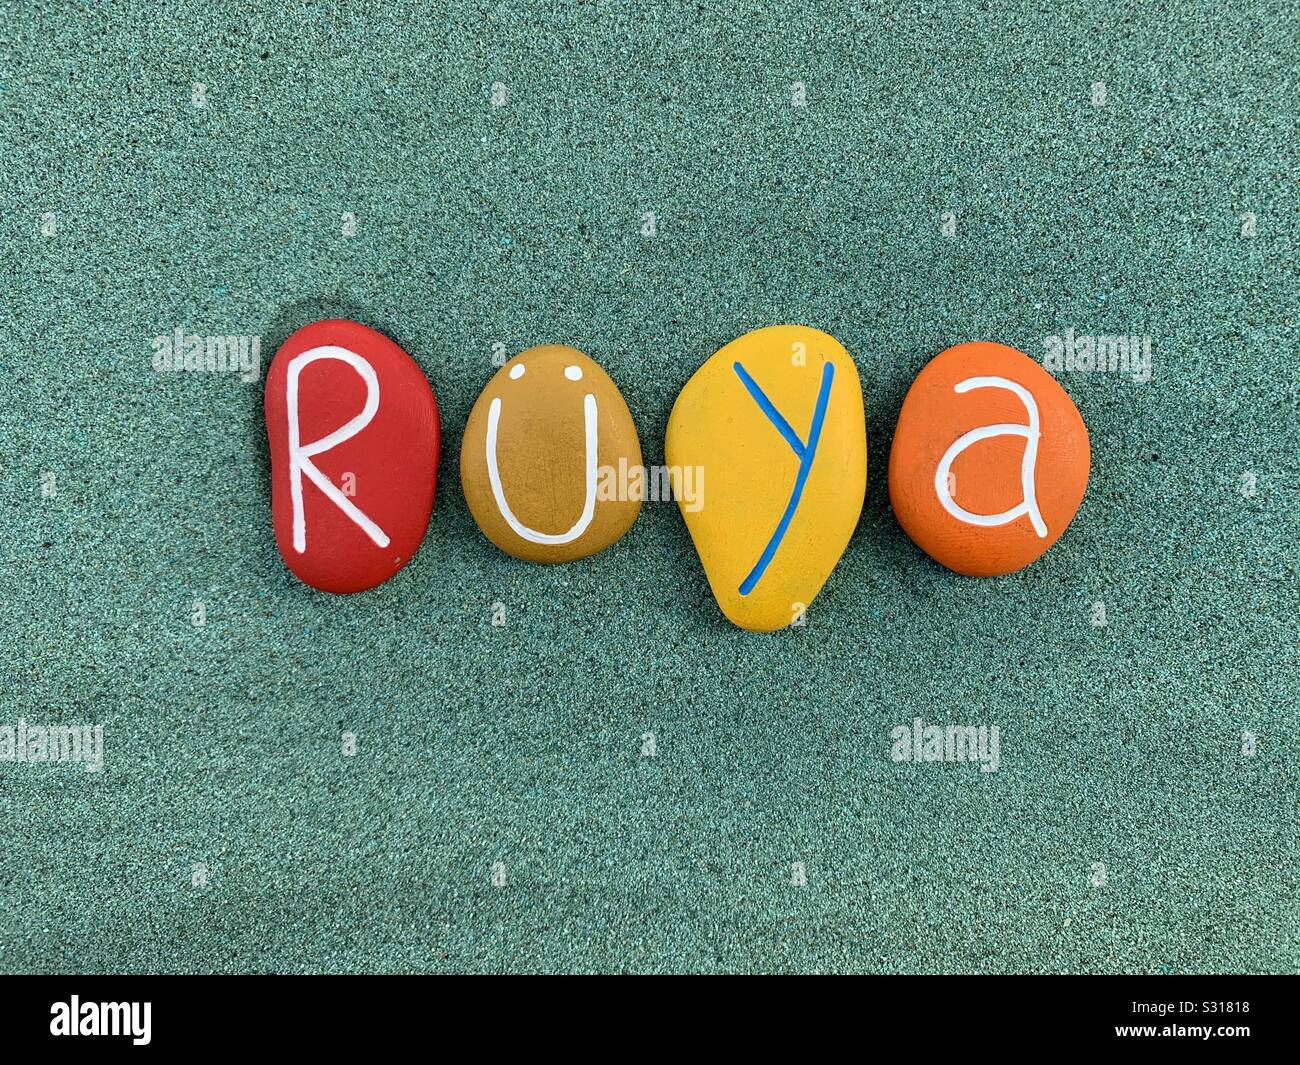 Rüya, türkische Vornamen komponiert mit farbigen Stein Briefe über grünen Sand Stockfoto